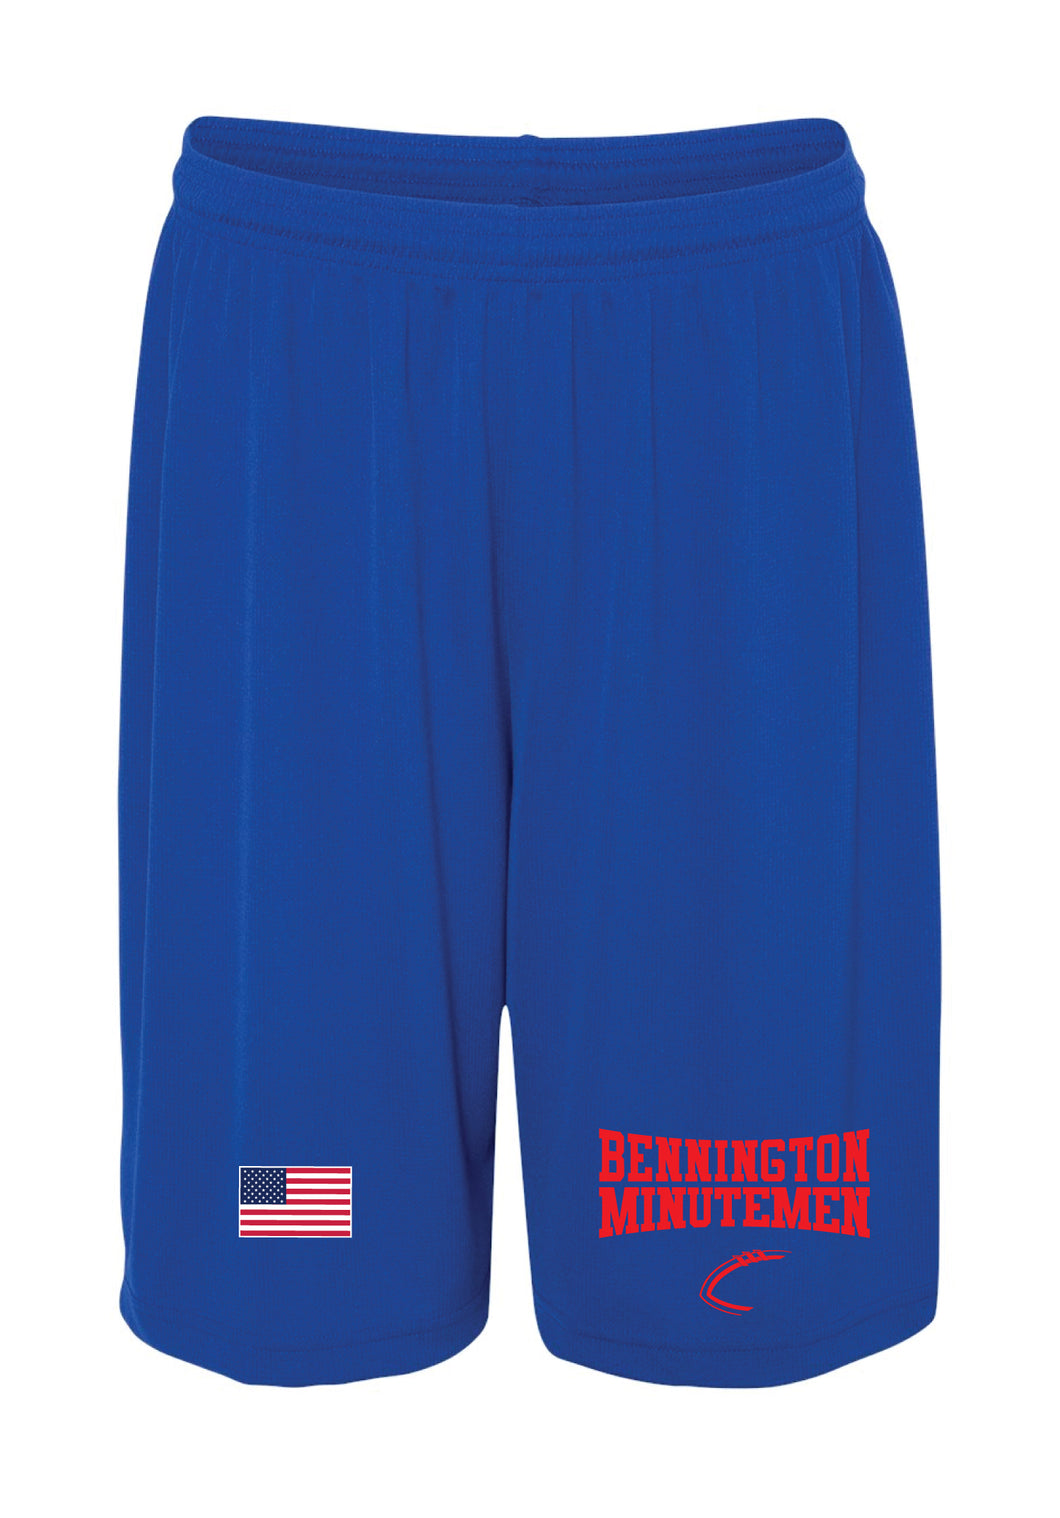 Bennington Minutemen Tech Shorts - 5KounT